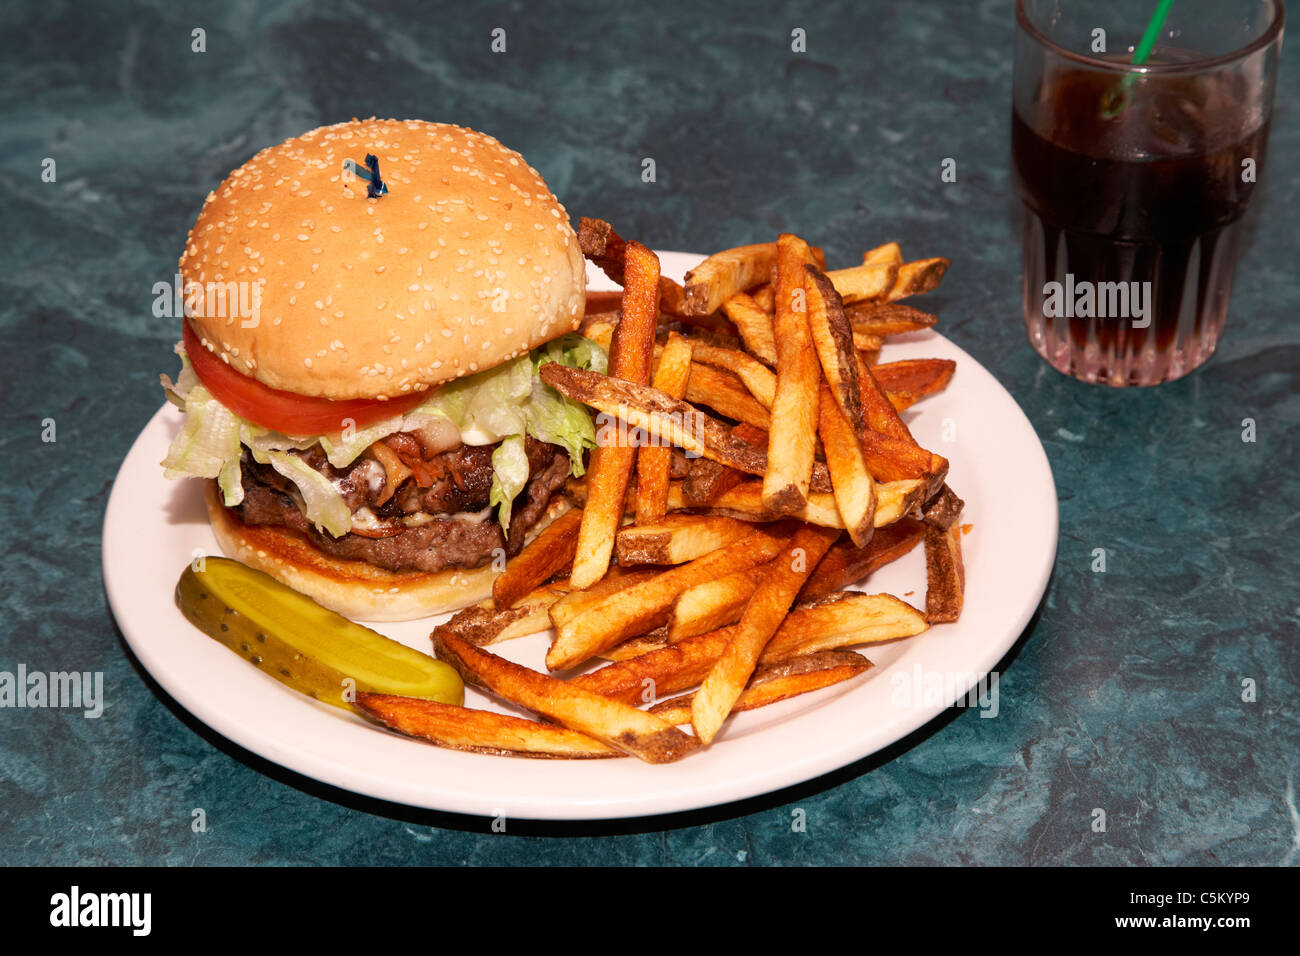 Media hamburguesa fotografías e imágenes de alta resolución - Alamy